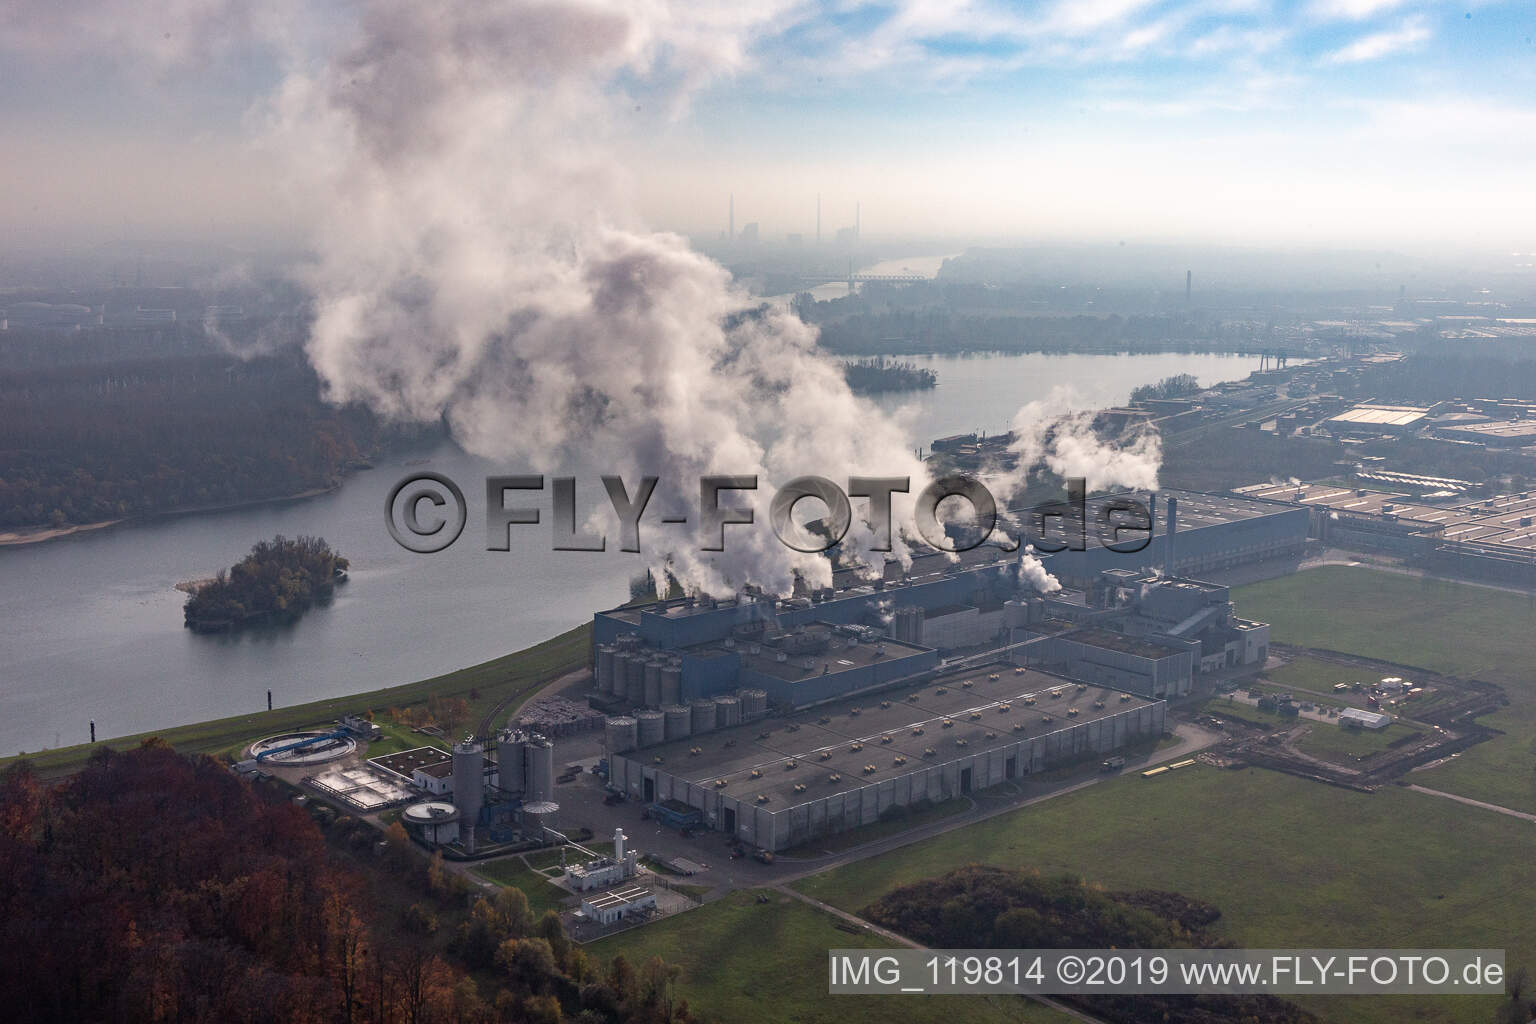 Luftbild von Papierfabrik Palm in Wörth am Rhein im Bundesland Rheinland-Pfalz, Deutschland